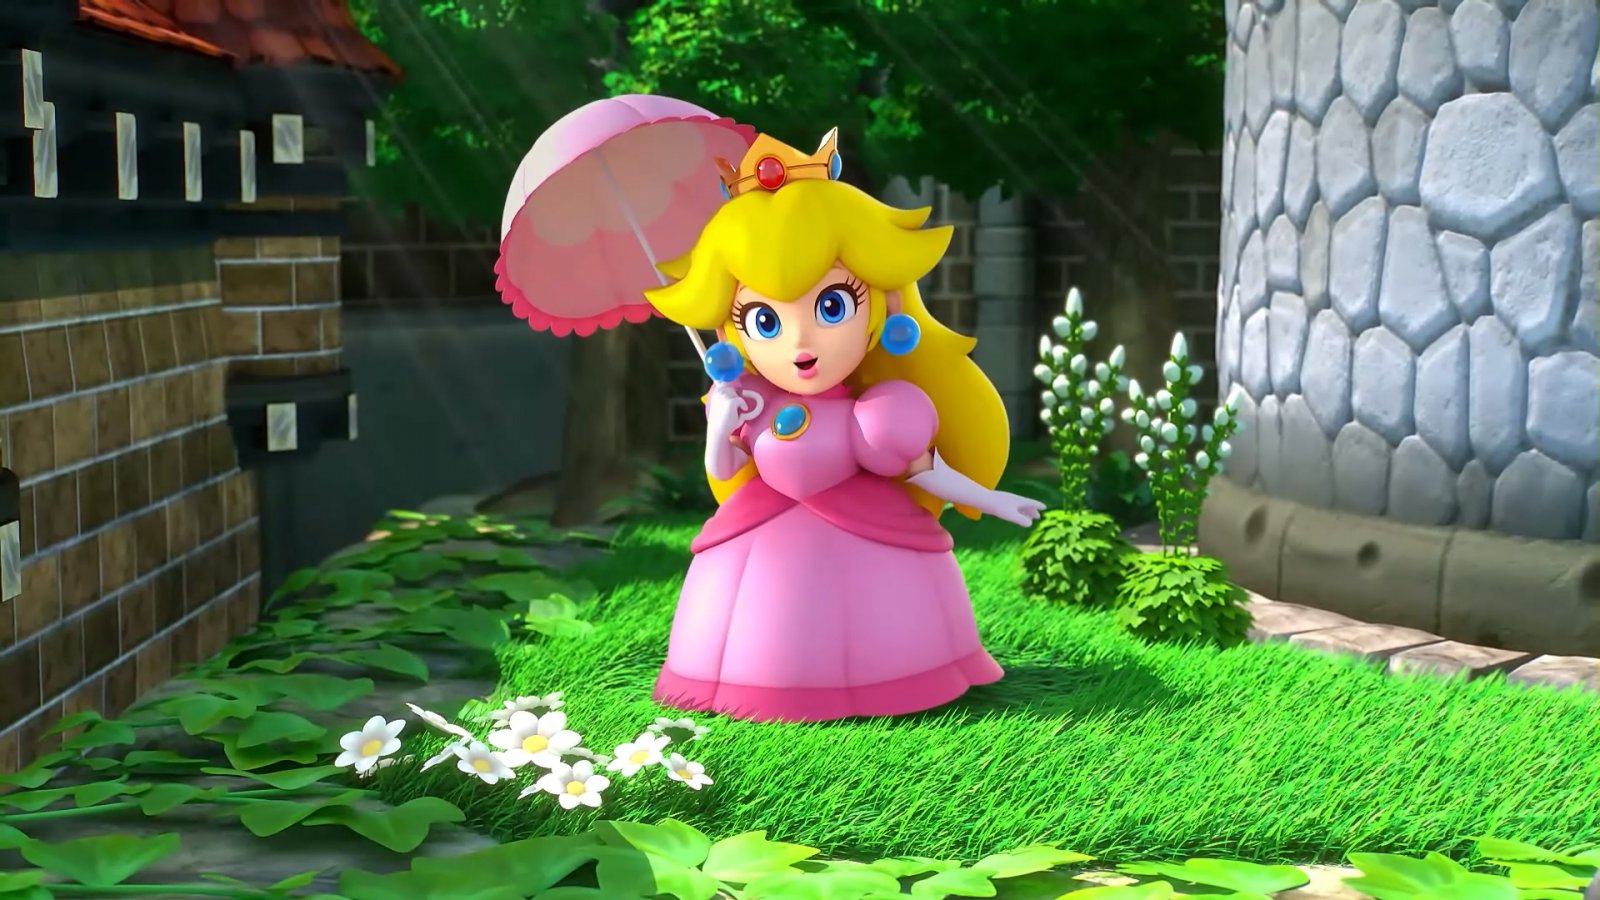 Super Mario RPG è sempre il gioco più atteso per Famitsu, nonostante sia già uscito